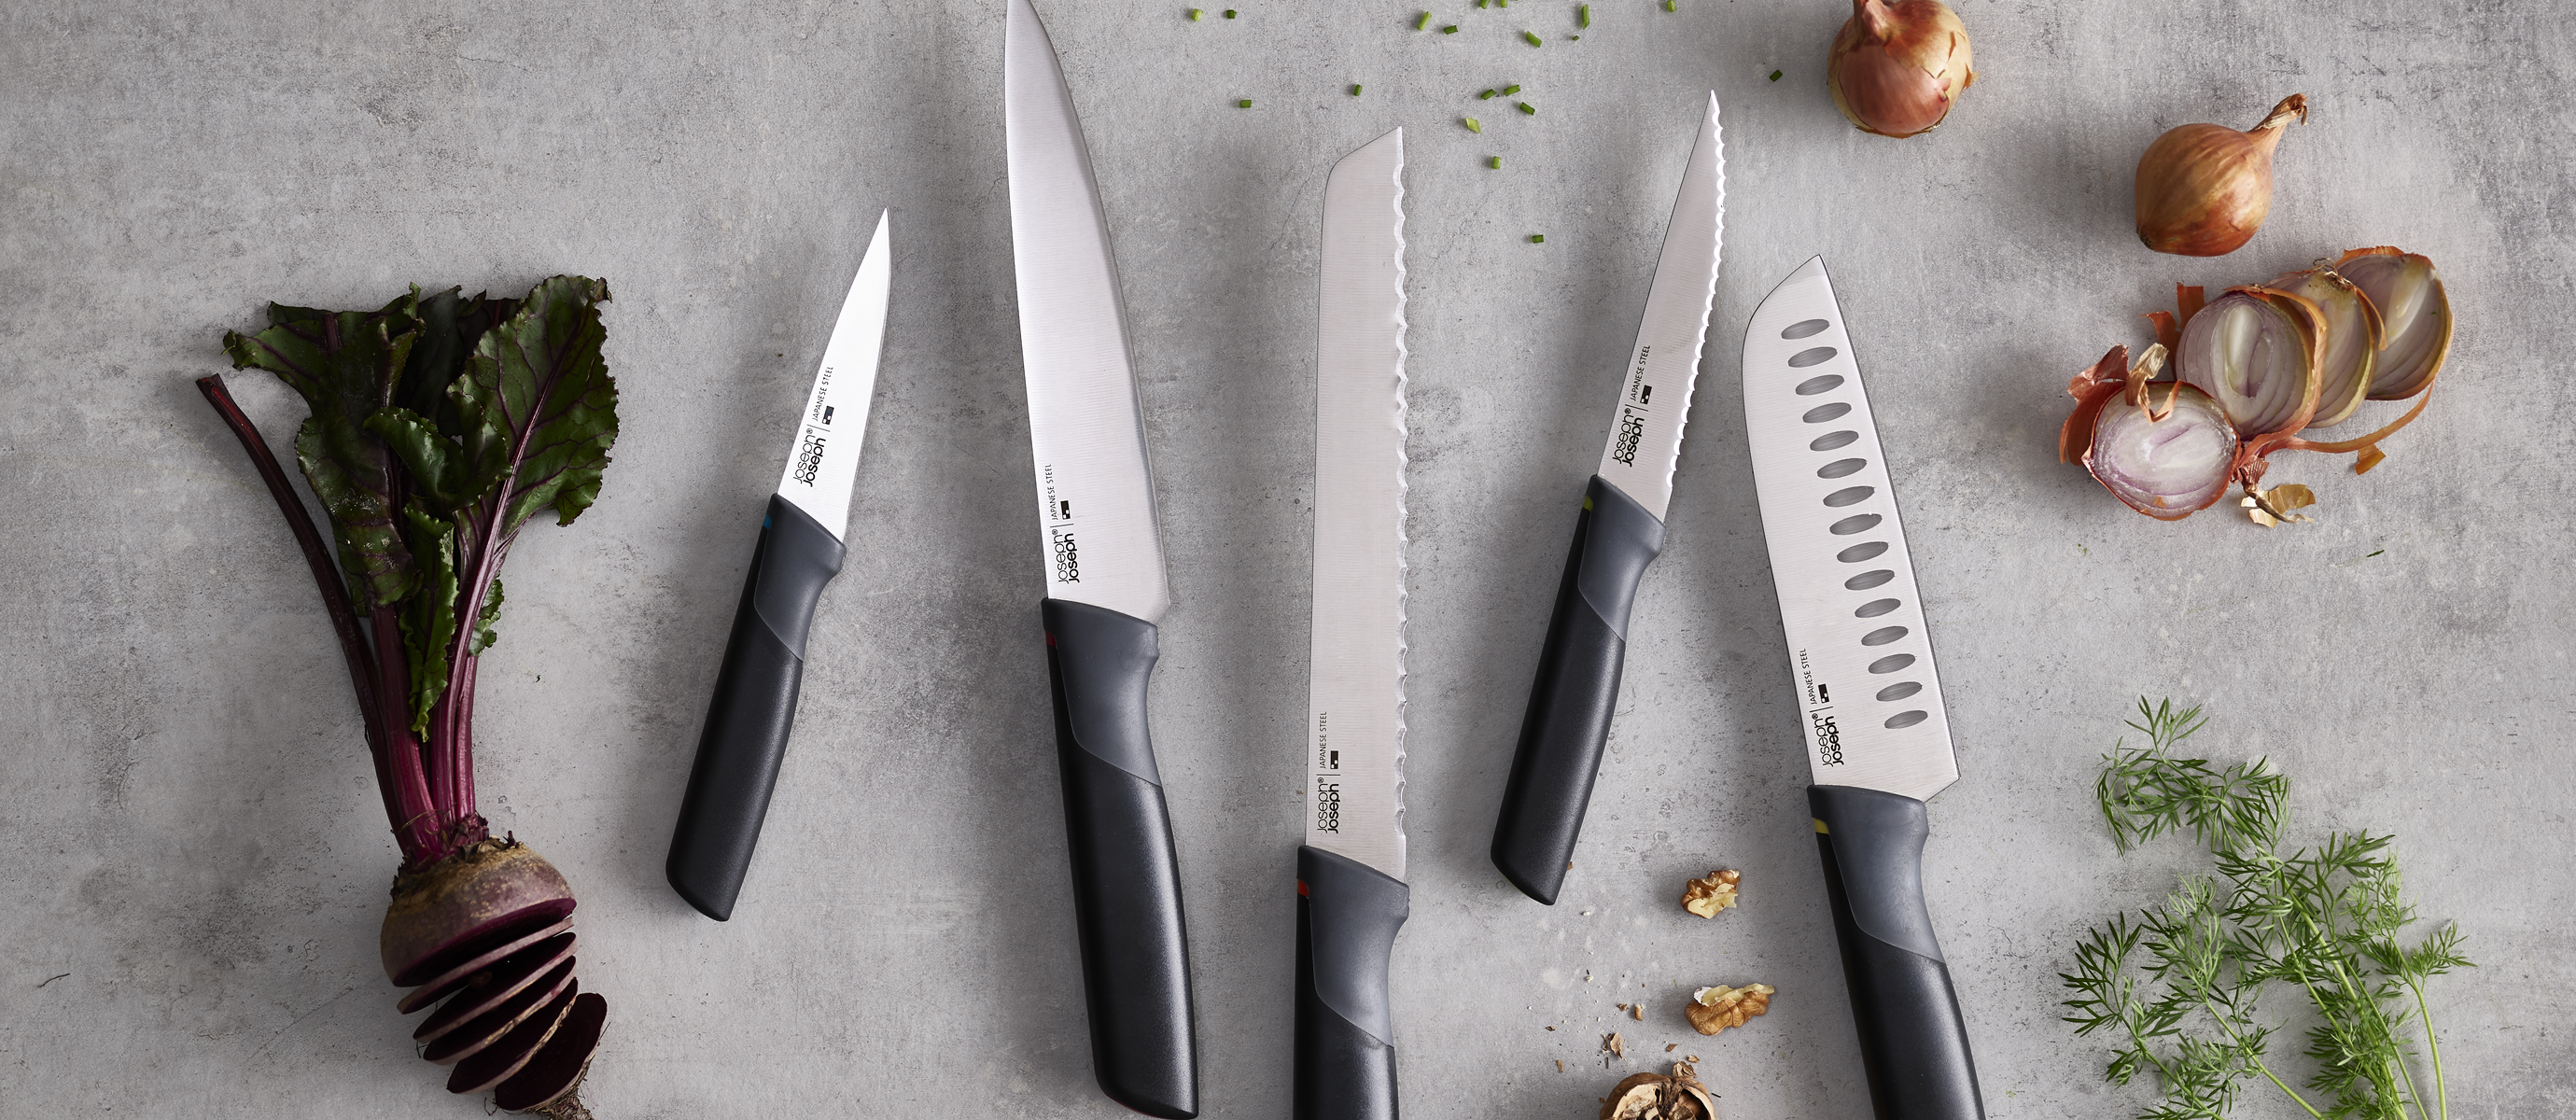 Яка сталь краща для ножа? Які кухонні ножі найкраще купити?